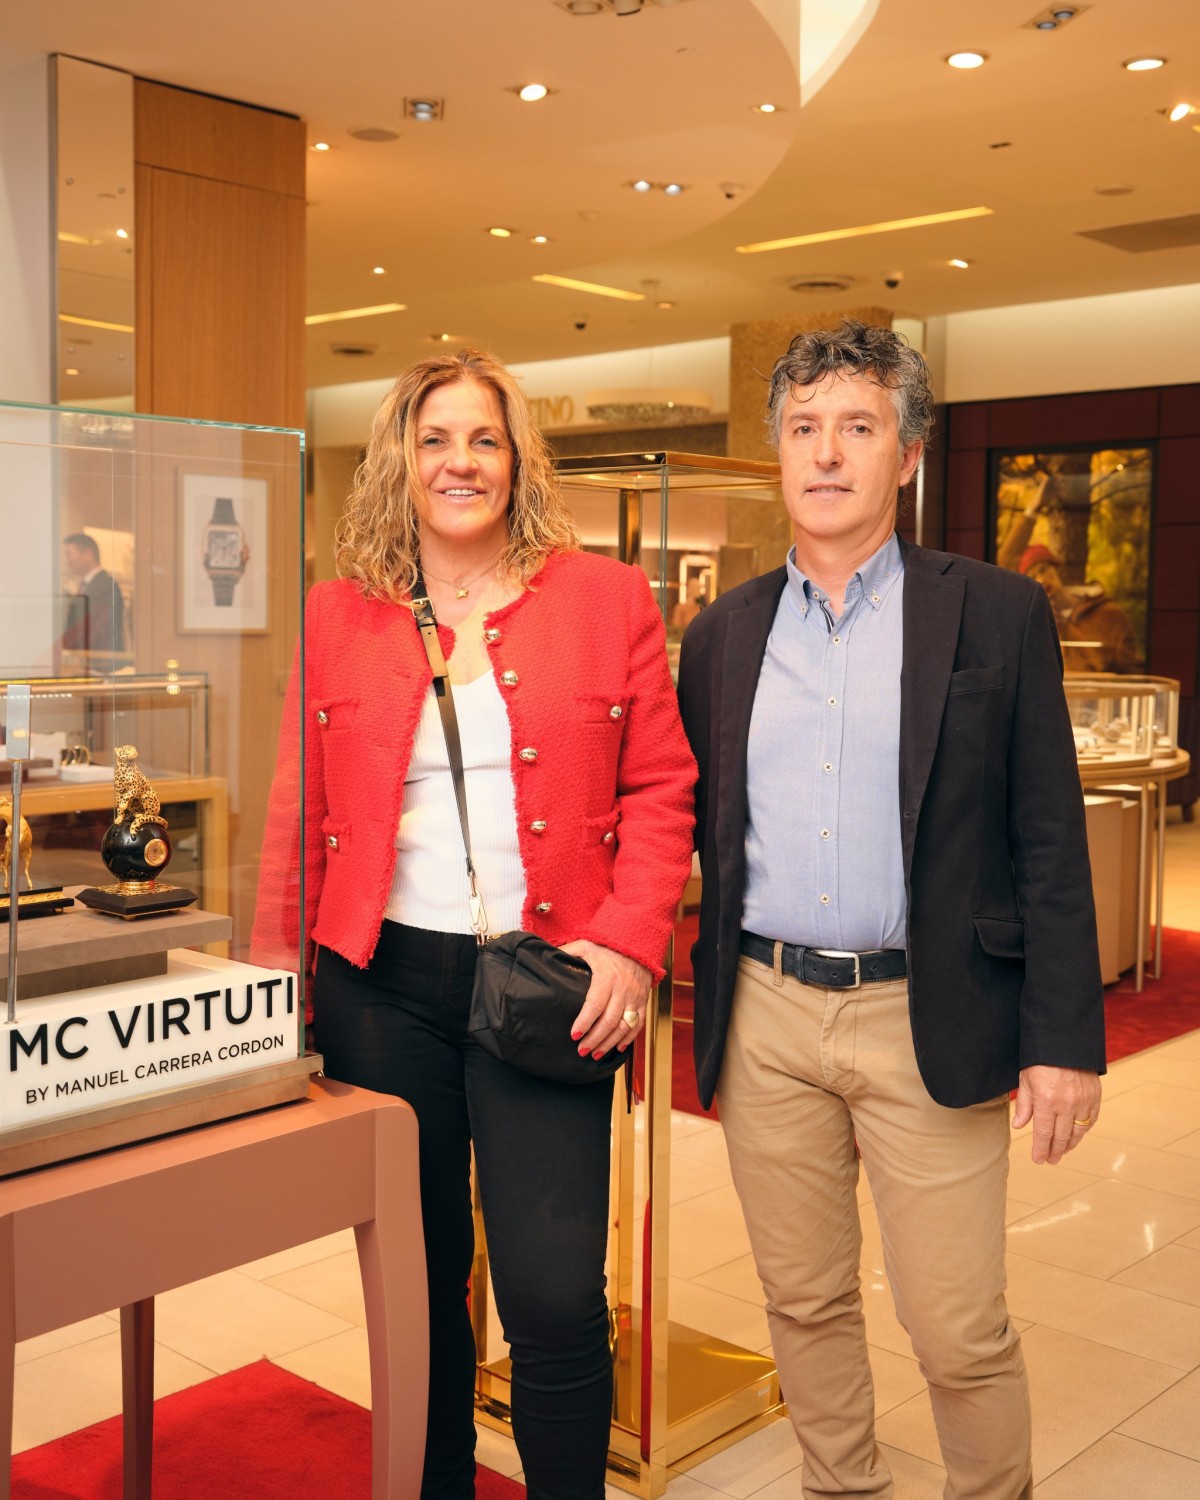 Мануэль Каррера представил ювелирный бренд Virtuti By Manuel Carrera Cordón в Saks Fifth Avenue Almaty